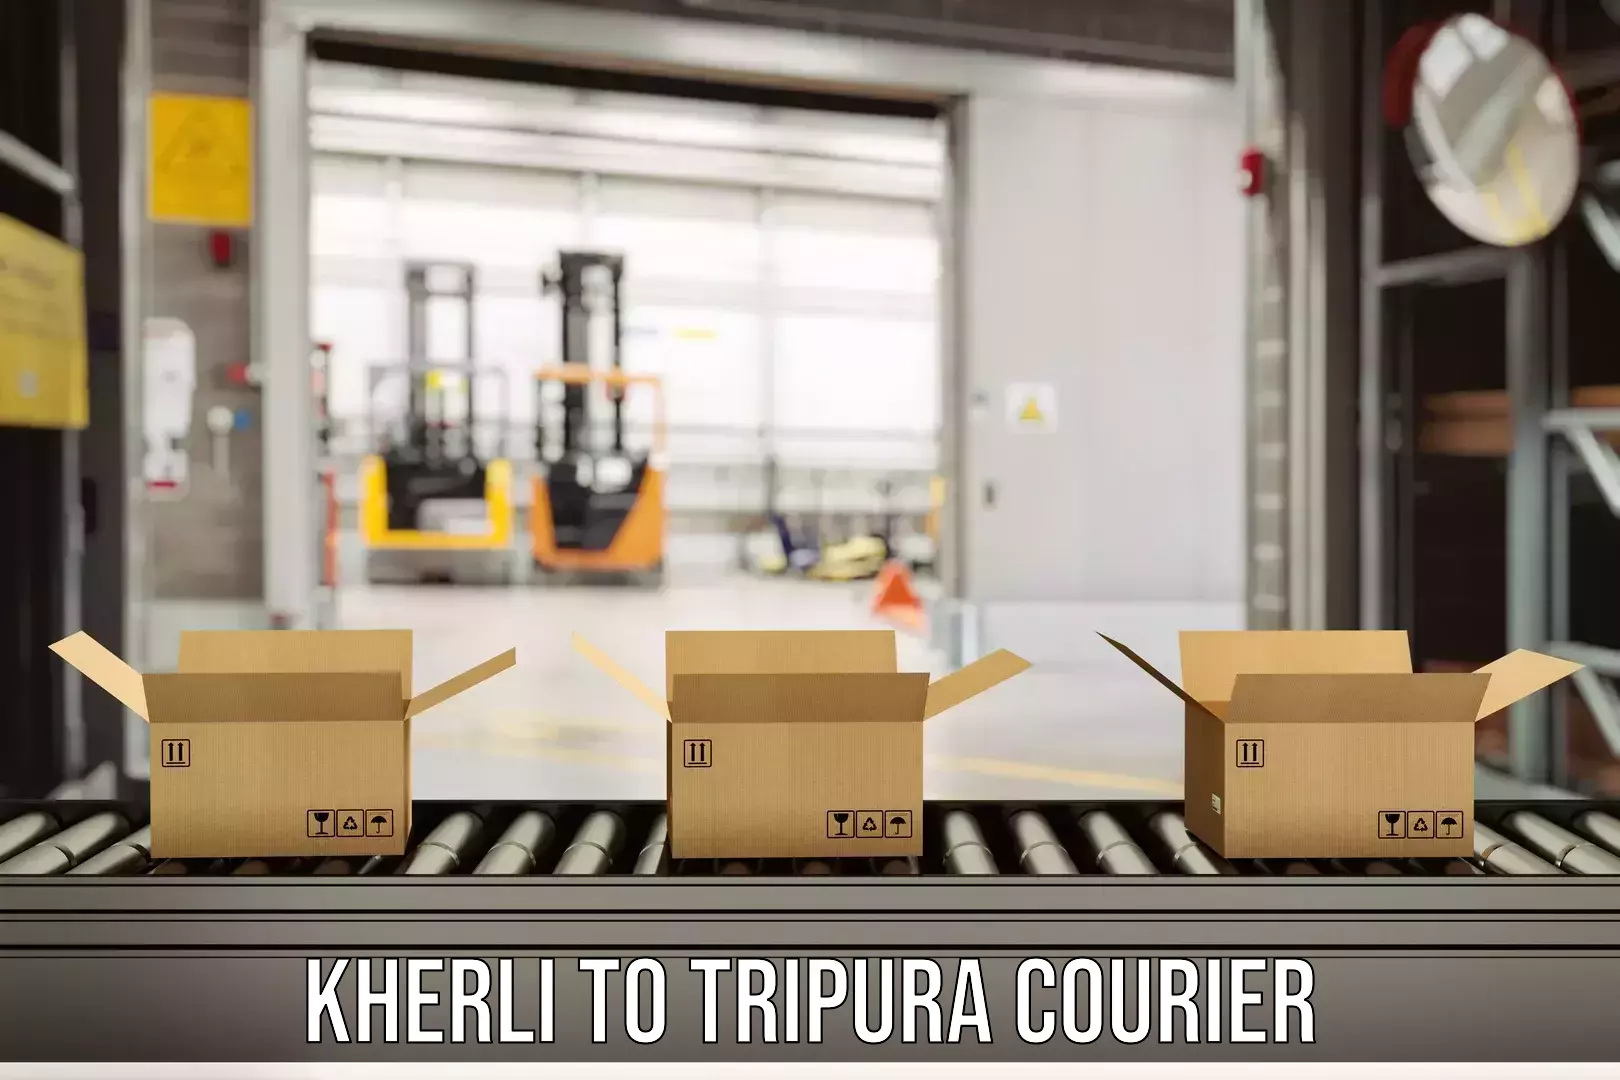 Express delivery capabilities Kherli to Kailashahar